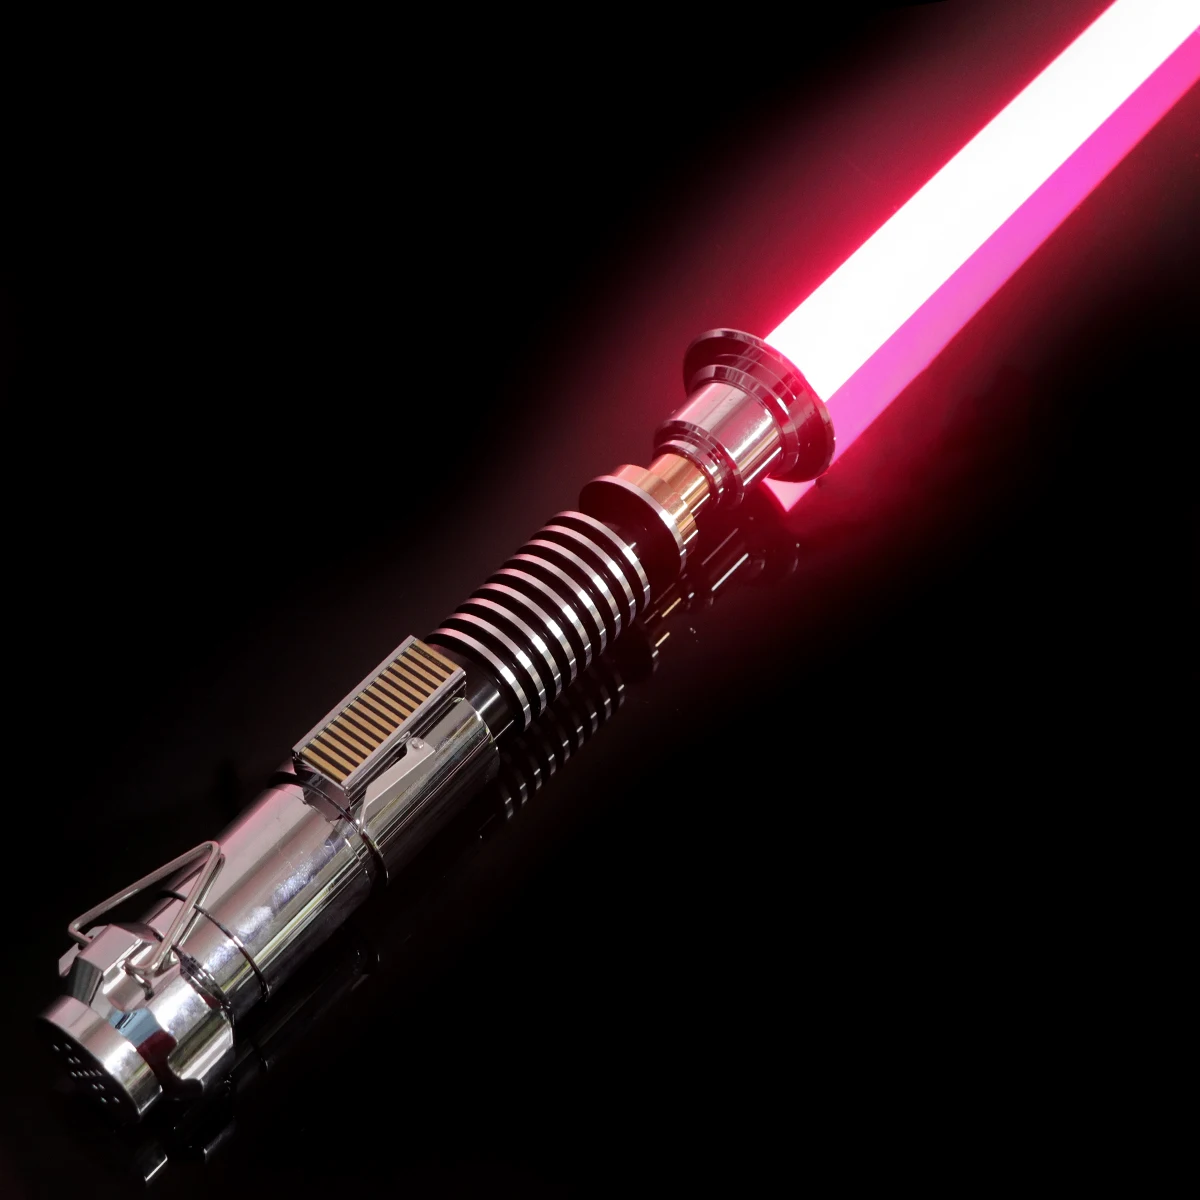 LGT Lightsaber-Luke Skywalker Force Heavy Dueling Light Saber Infinite Color Changing with Sensitive Smooth Swing